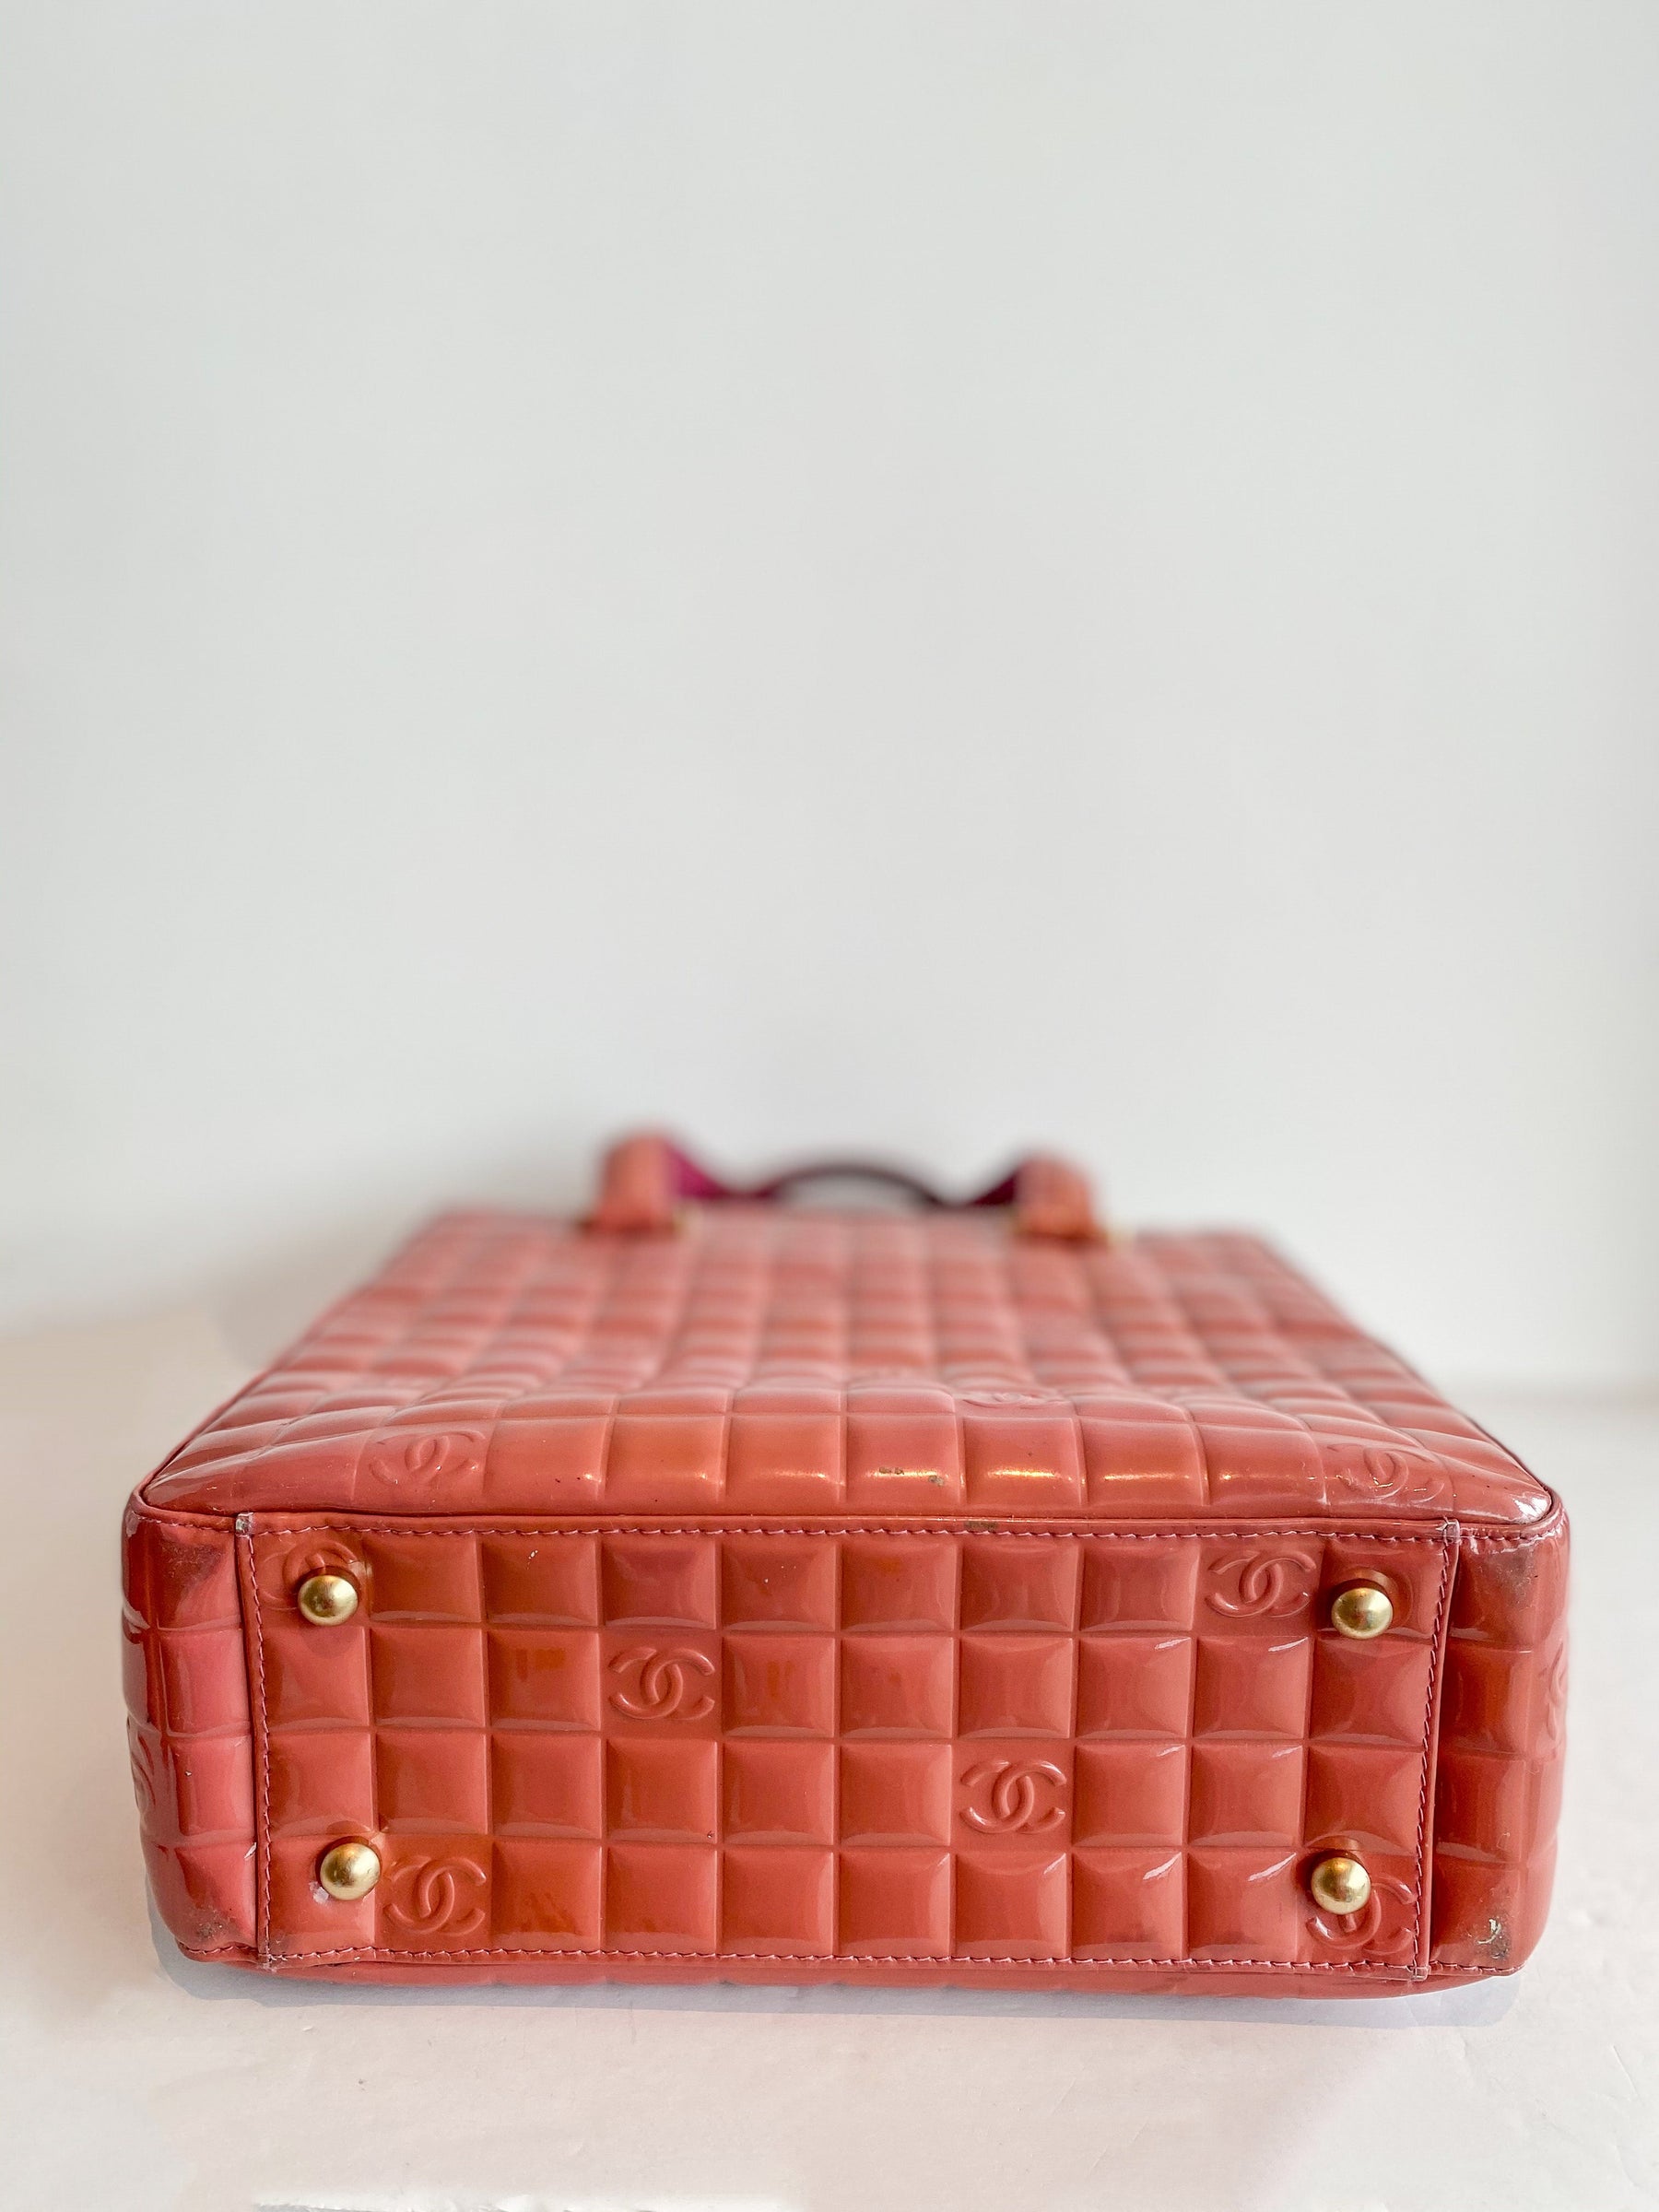 Chanel Chocolate Bar Tote Bag Pink Bottom